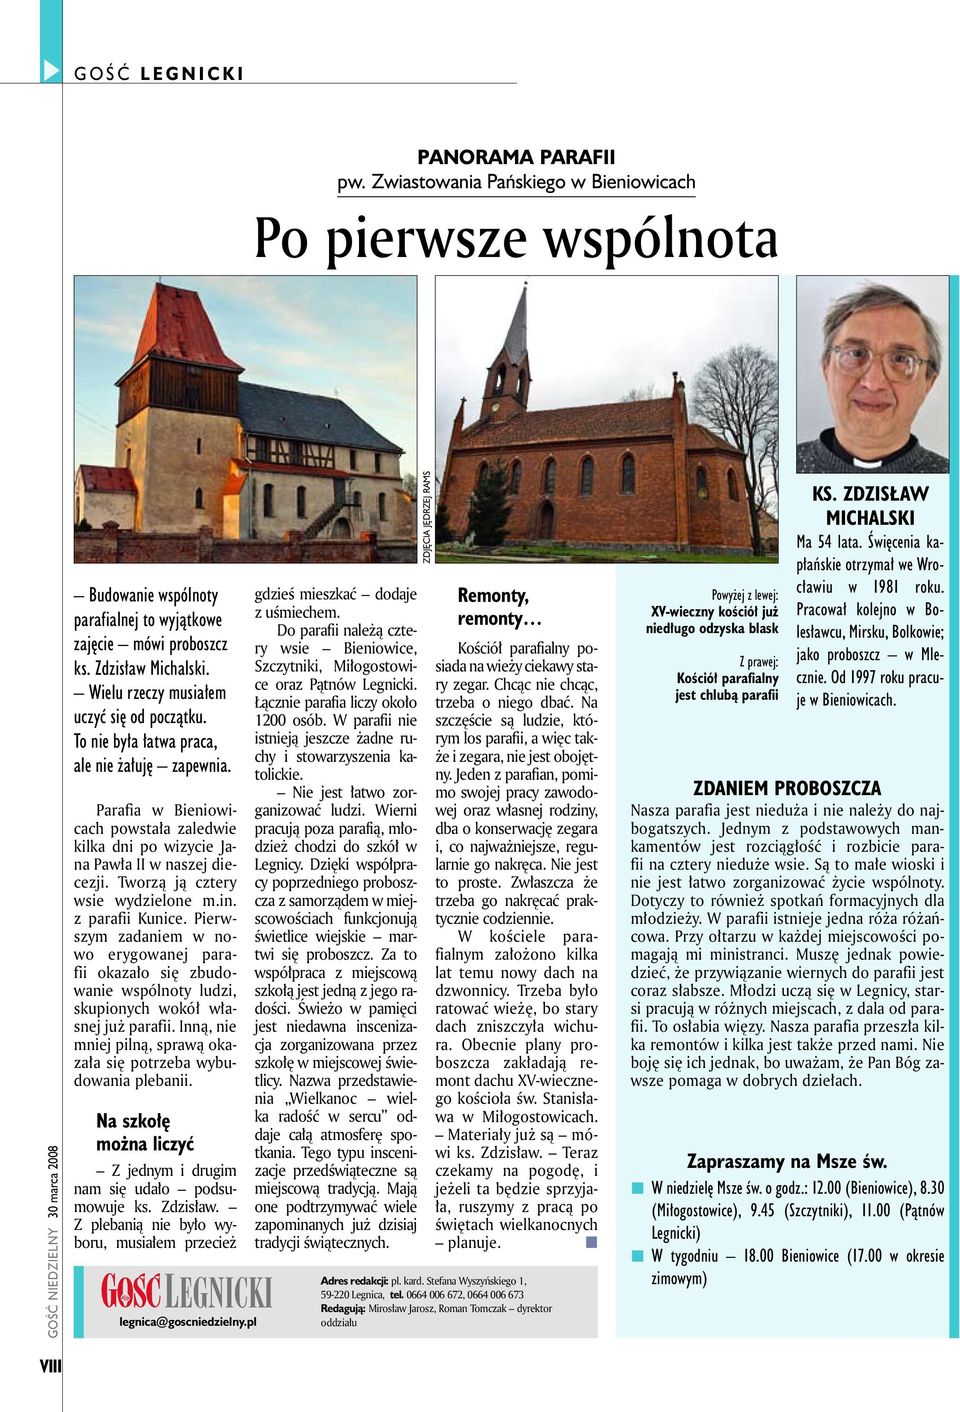 Parafia w Bieniowicach powstała zaledwie kilka dni po wizycie Jana Pawła II w naszej diecezji. Tworzą ją cztery wsie wydzielone m.in. z parafii Kunice.